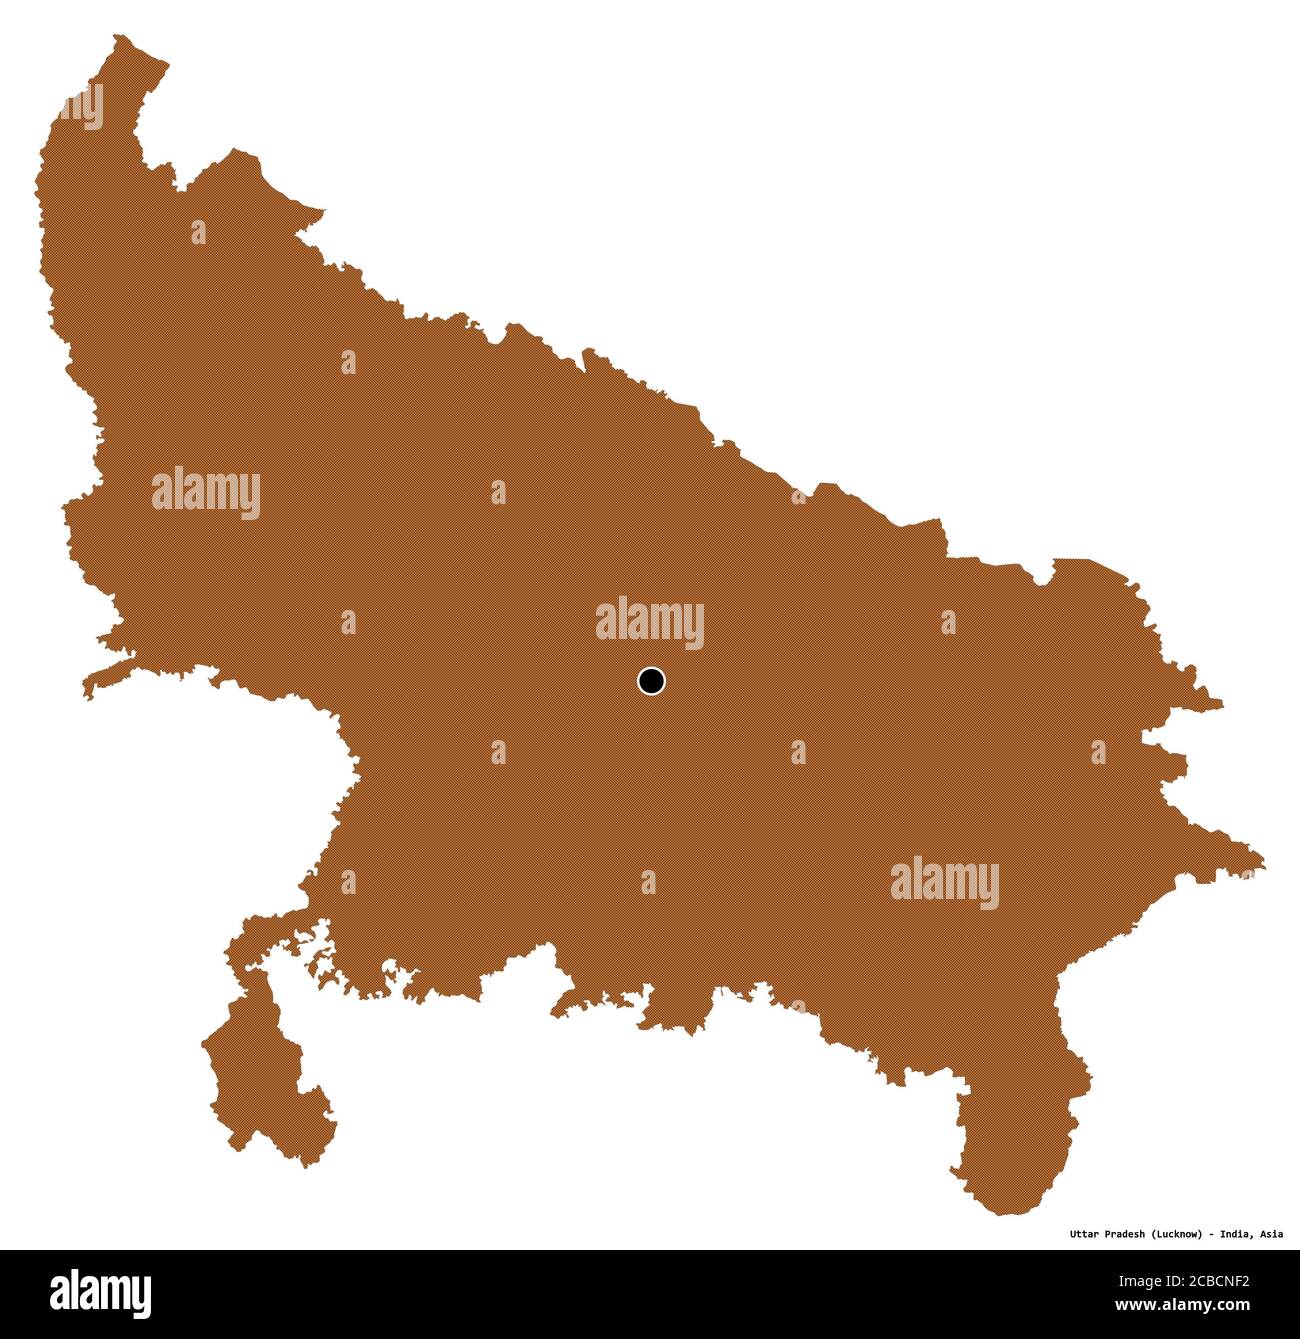 Forme de l'Uttar Pradesh, État de l'Inde, avec sa capitale isolée sur fond blanc. Composition des textures répétées. Rendu 3D Banque D'Images